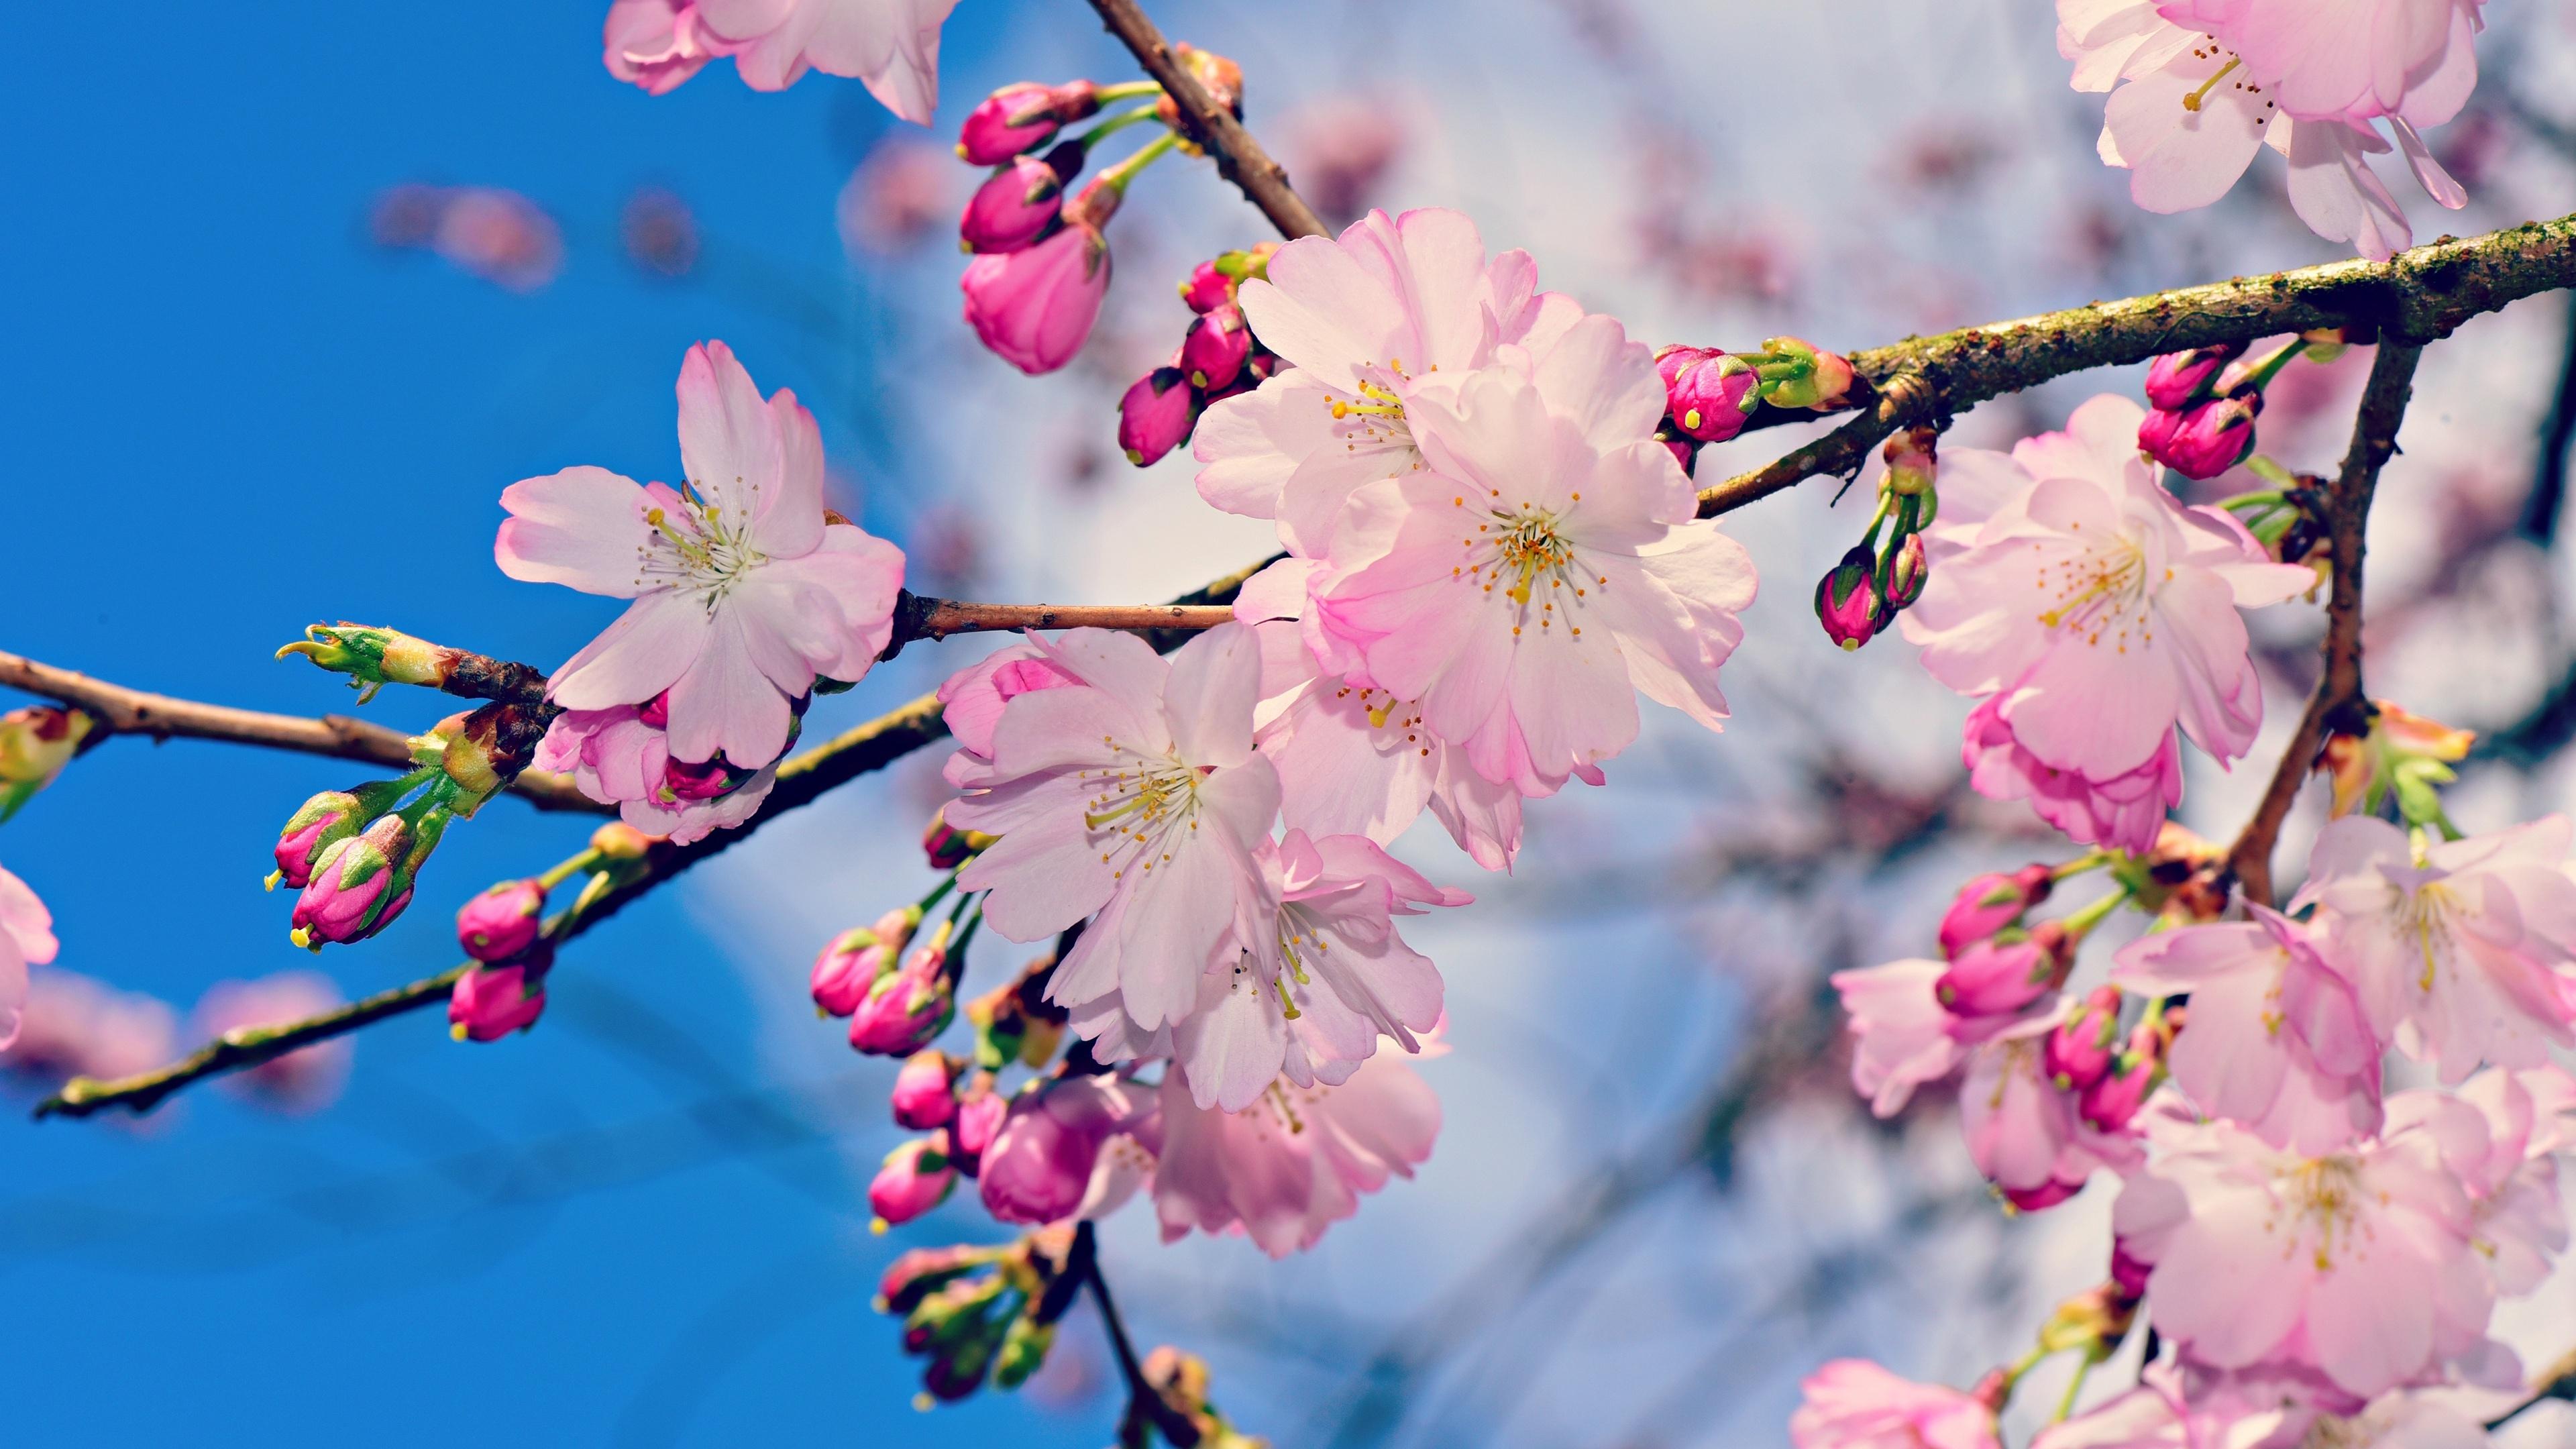 盛开的樱花1366x768分辨率下载 盛开的樱花 高清图片 壁纸 花卉 桌面城市